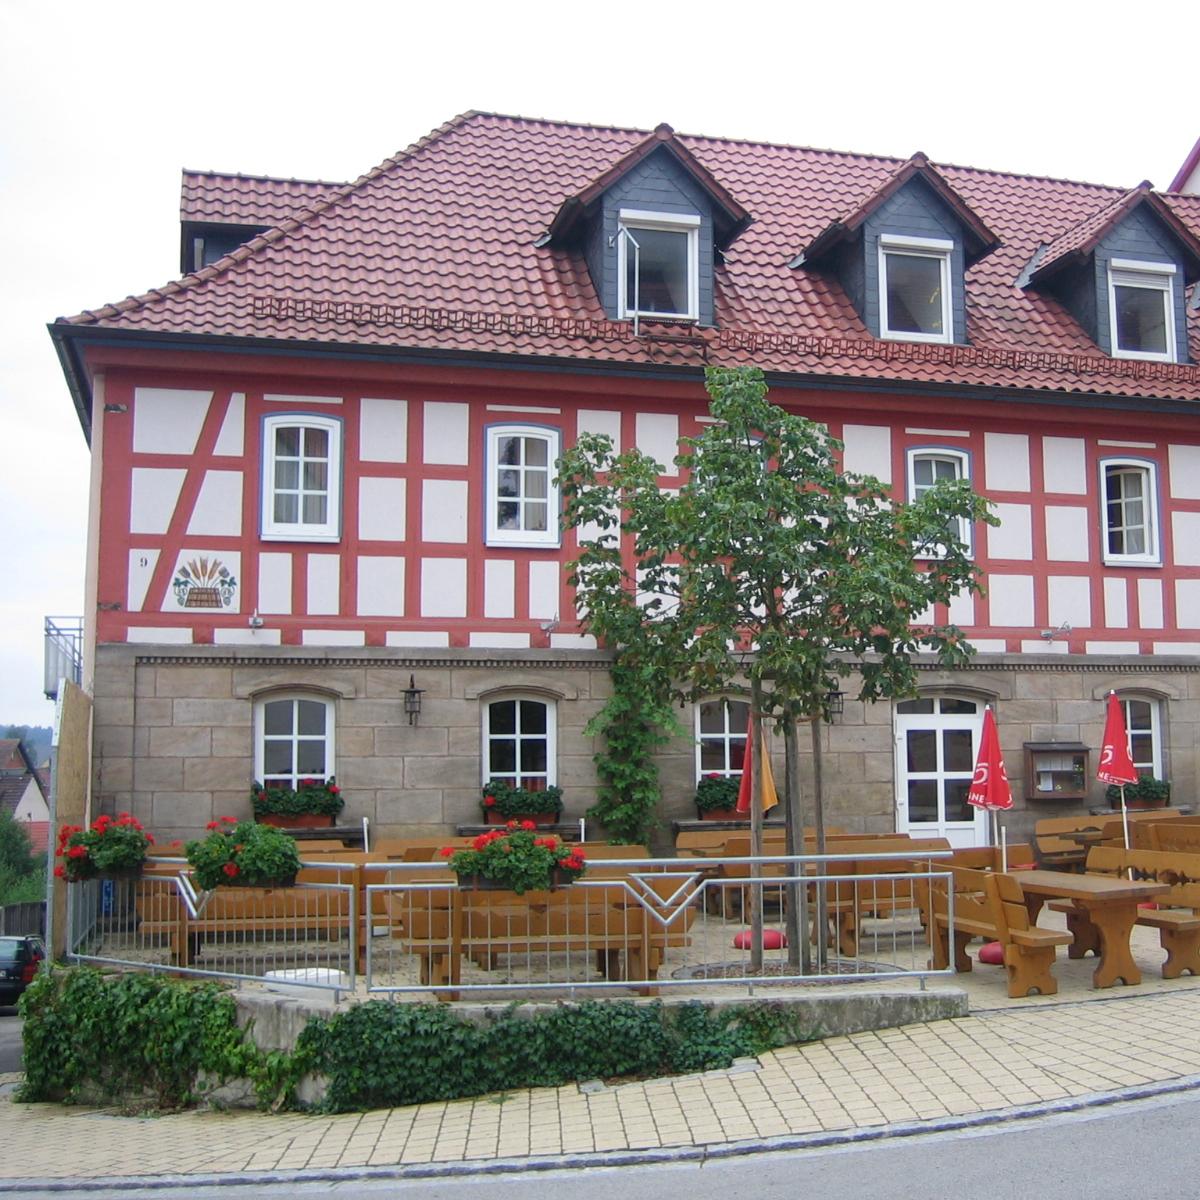 Restaurant "Brauerei Gasthof Hartleb" in  Maroldsweisach